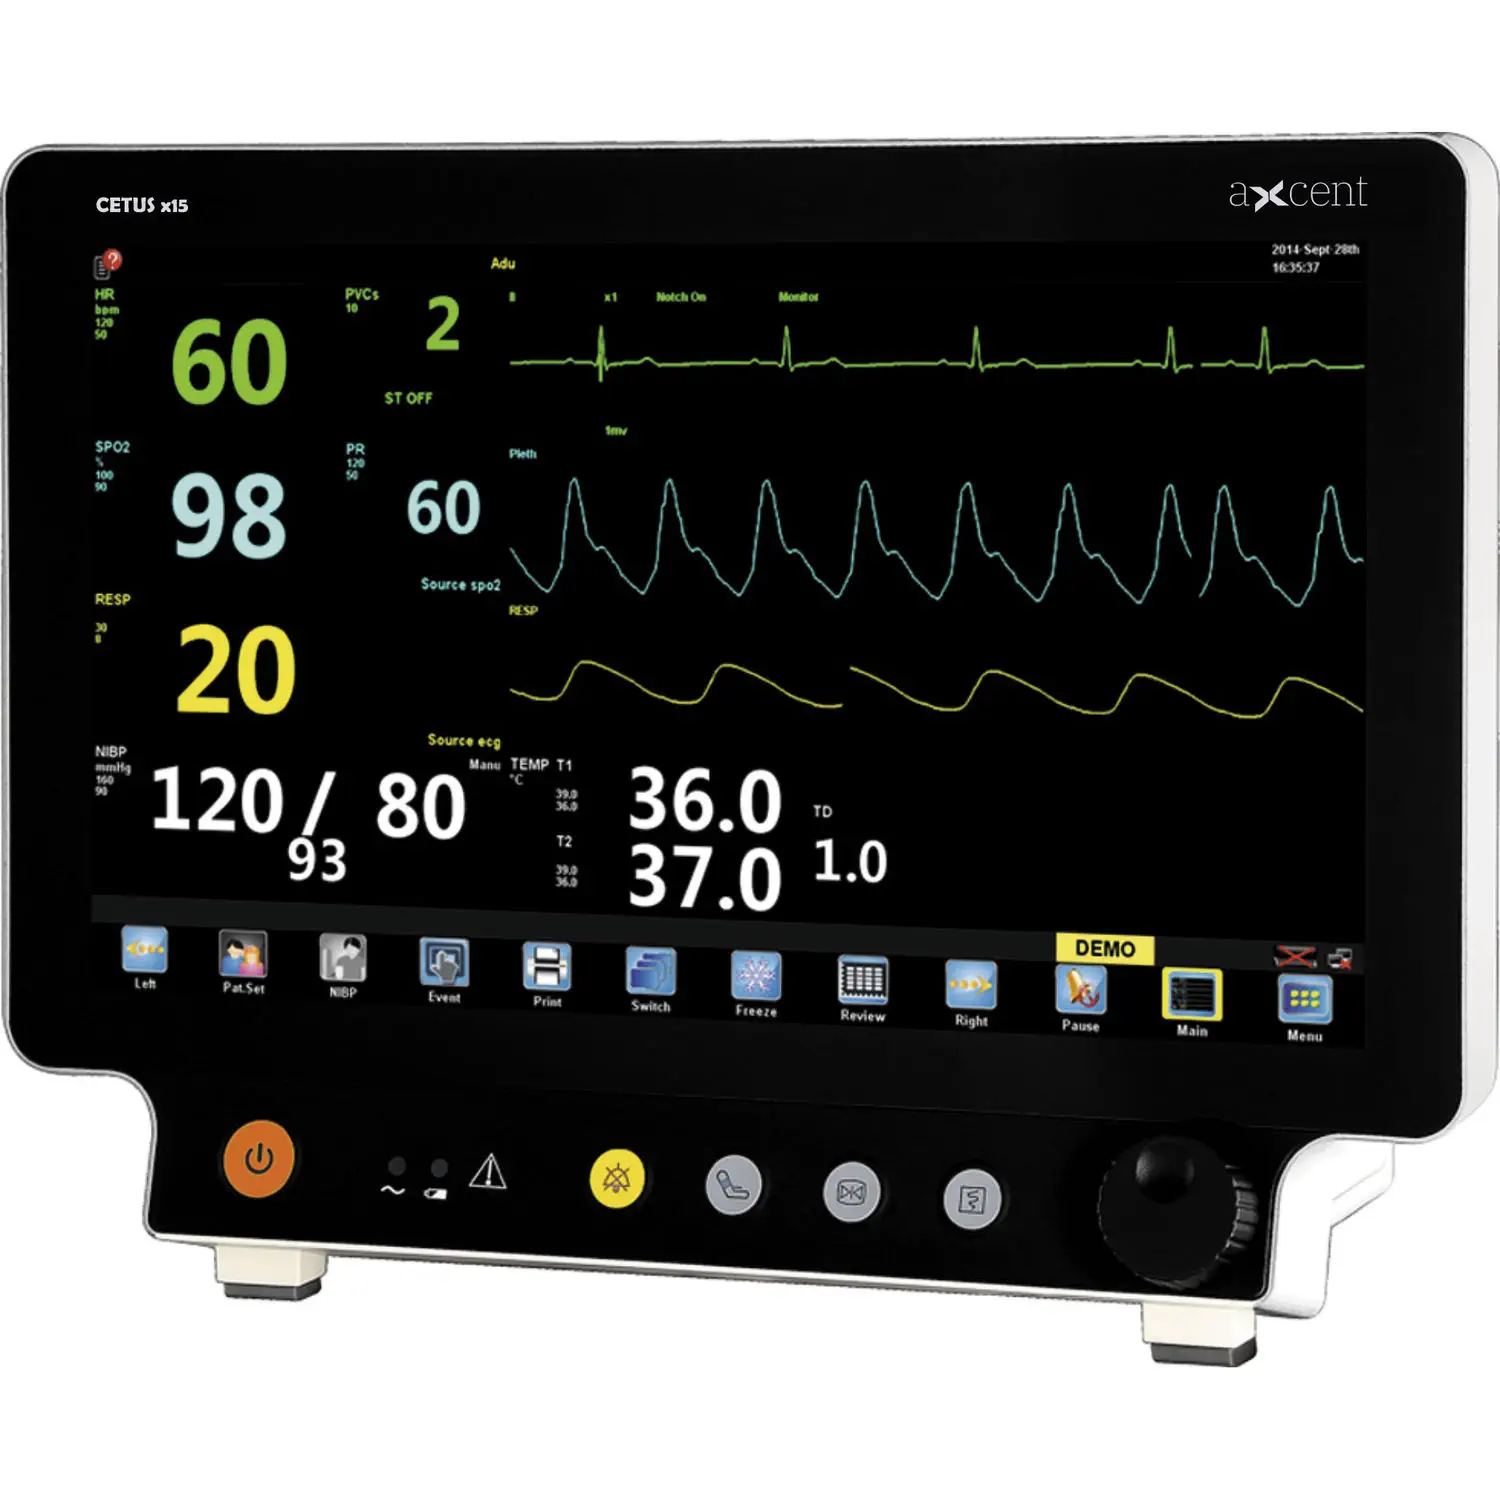 เครื่องติดตามการทำงานของหัวใจและสัญญาณชีพอัตโนมัติ  Tabletop patient monitor CETUS x15  aXcent medical